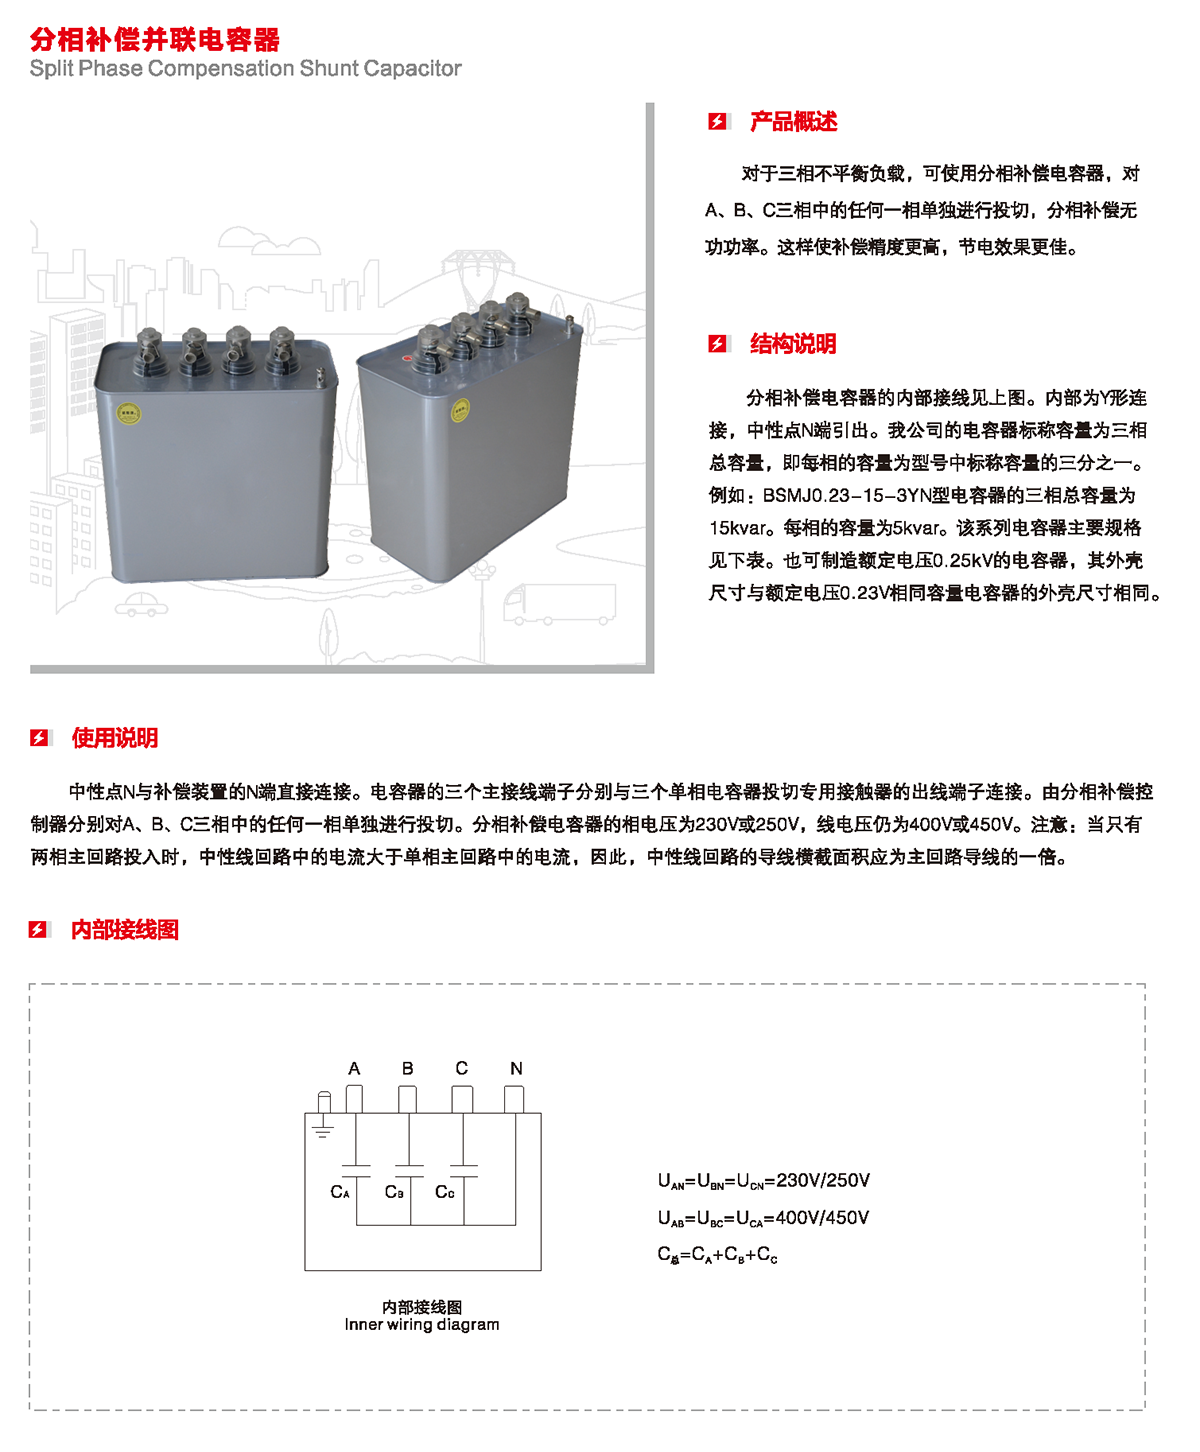 分相補償并聯電容器產品概述、結構說明、使用說明